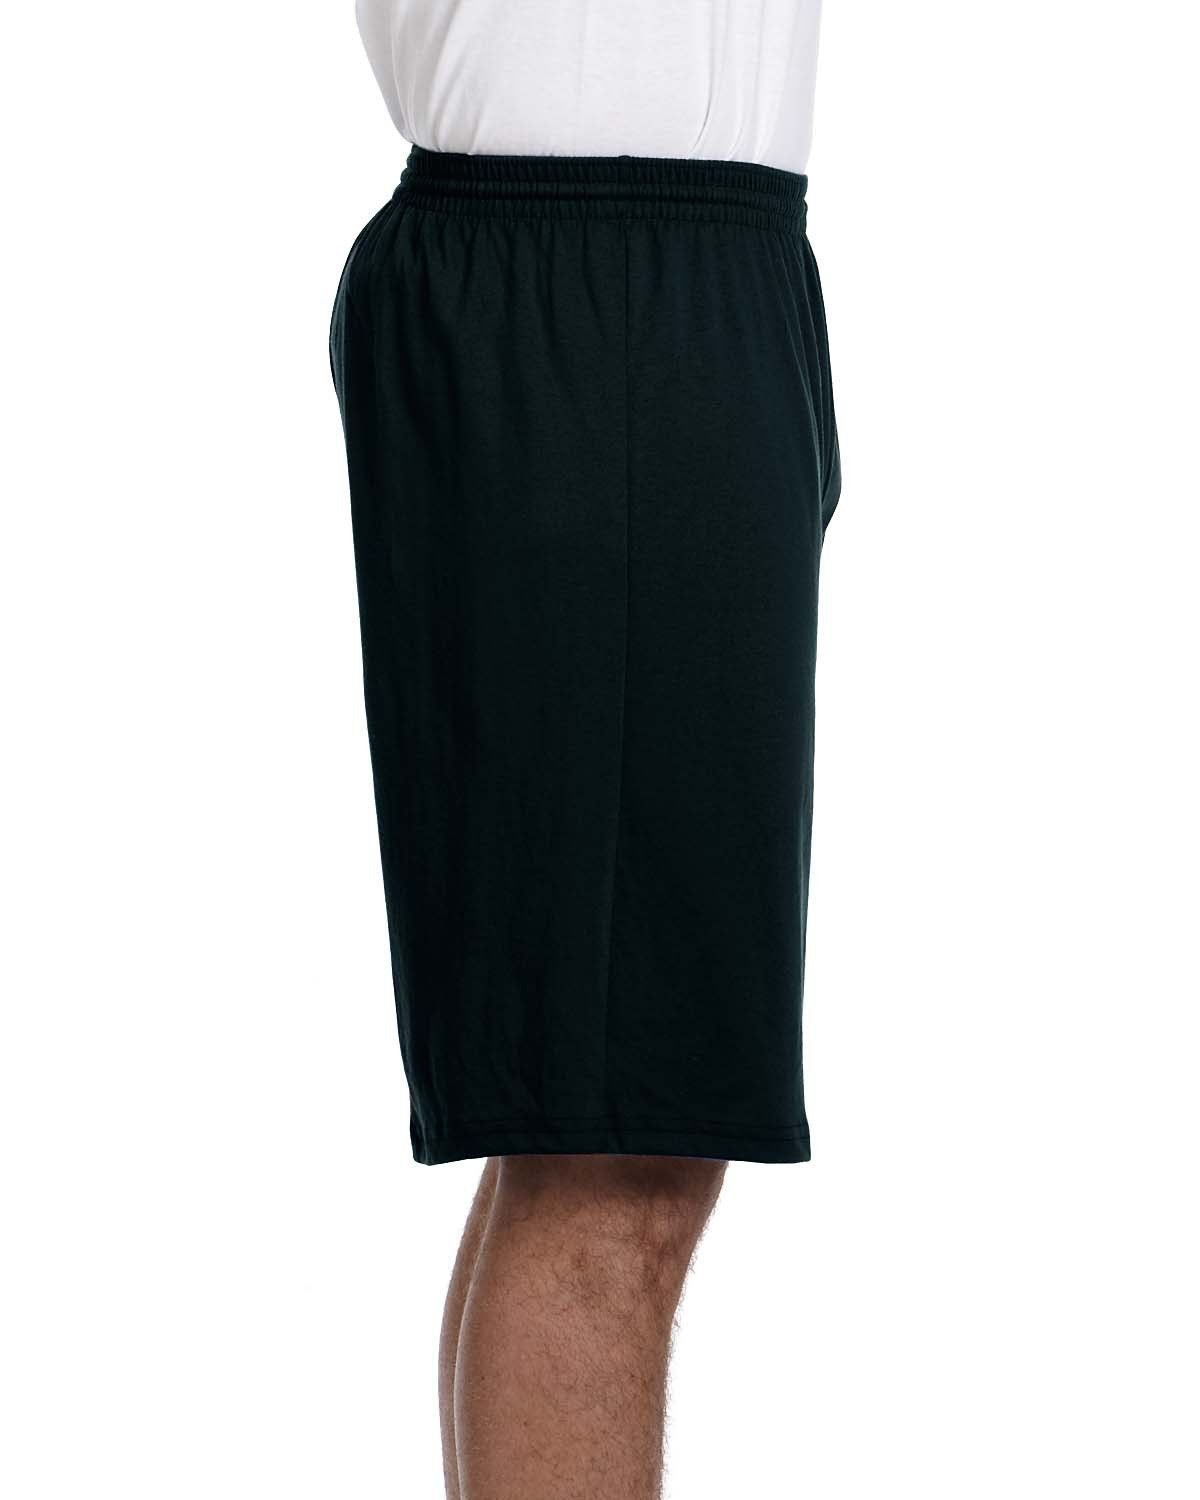 'Augusta Sportswear 915 Adult Longer-Length Jersey Short'